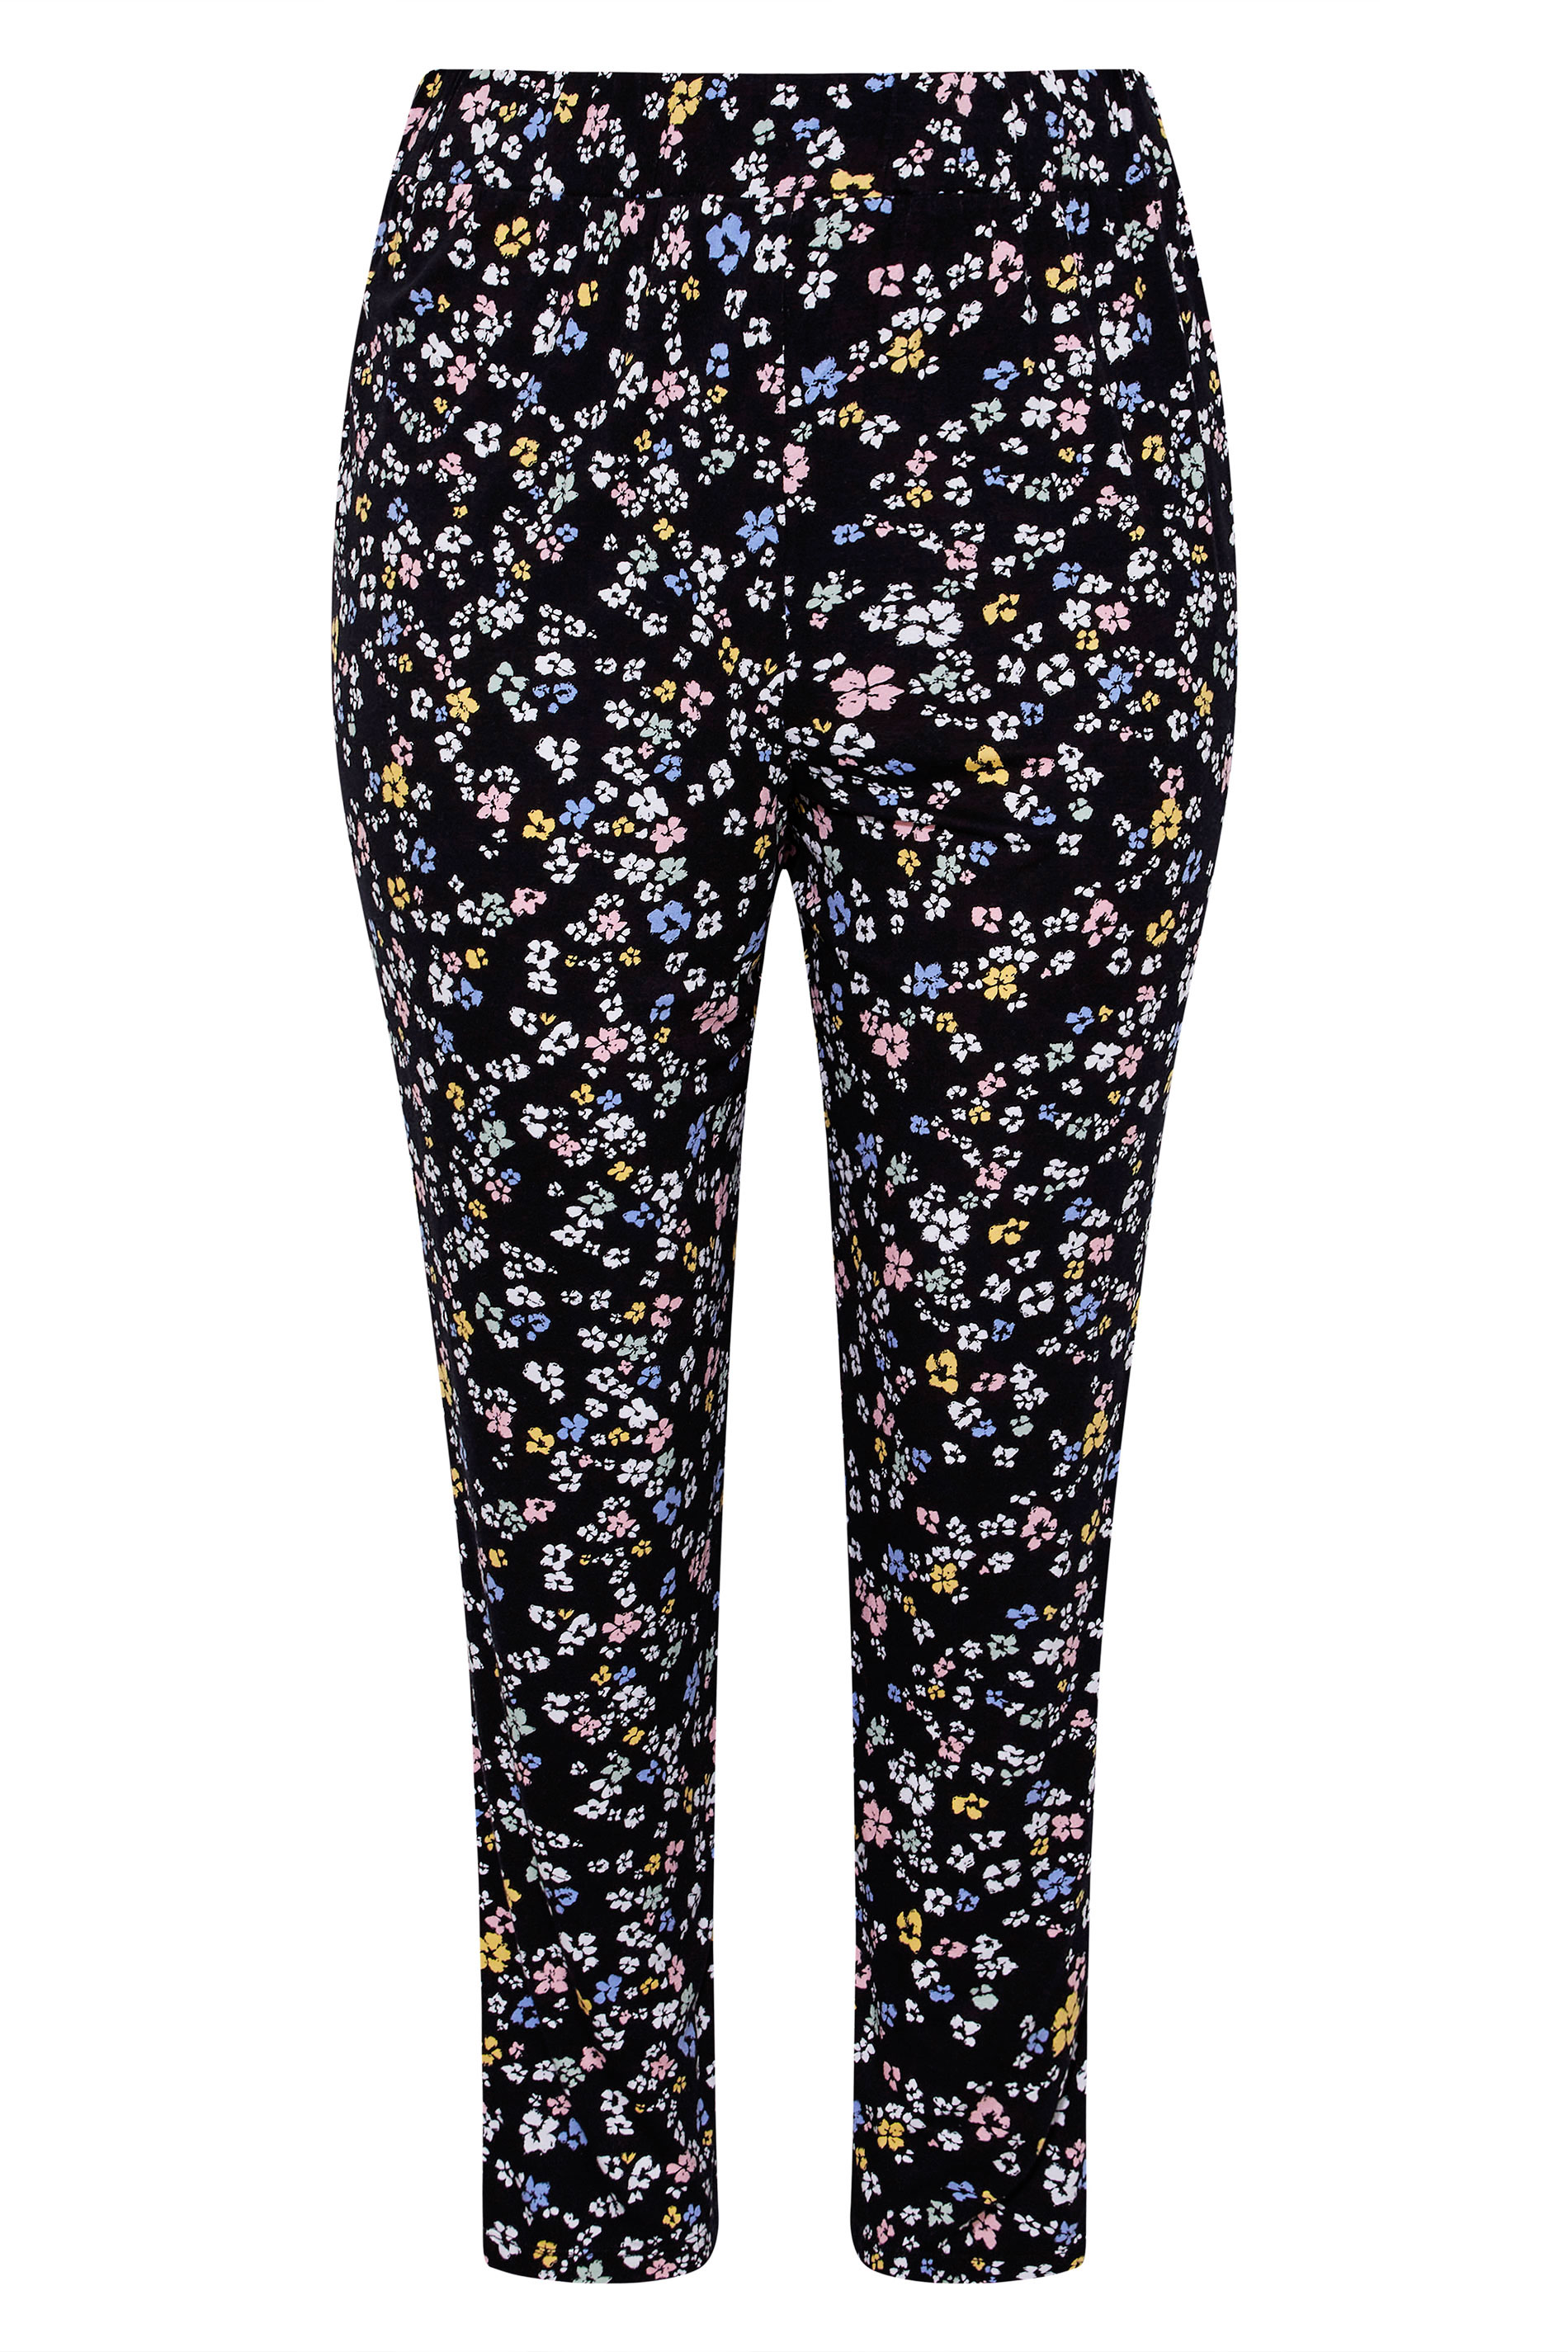 Grande taille  Pantalons Grande taille  Joggings | Jogging Noir & Pastel Imprimé Floral - HB58978